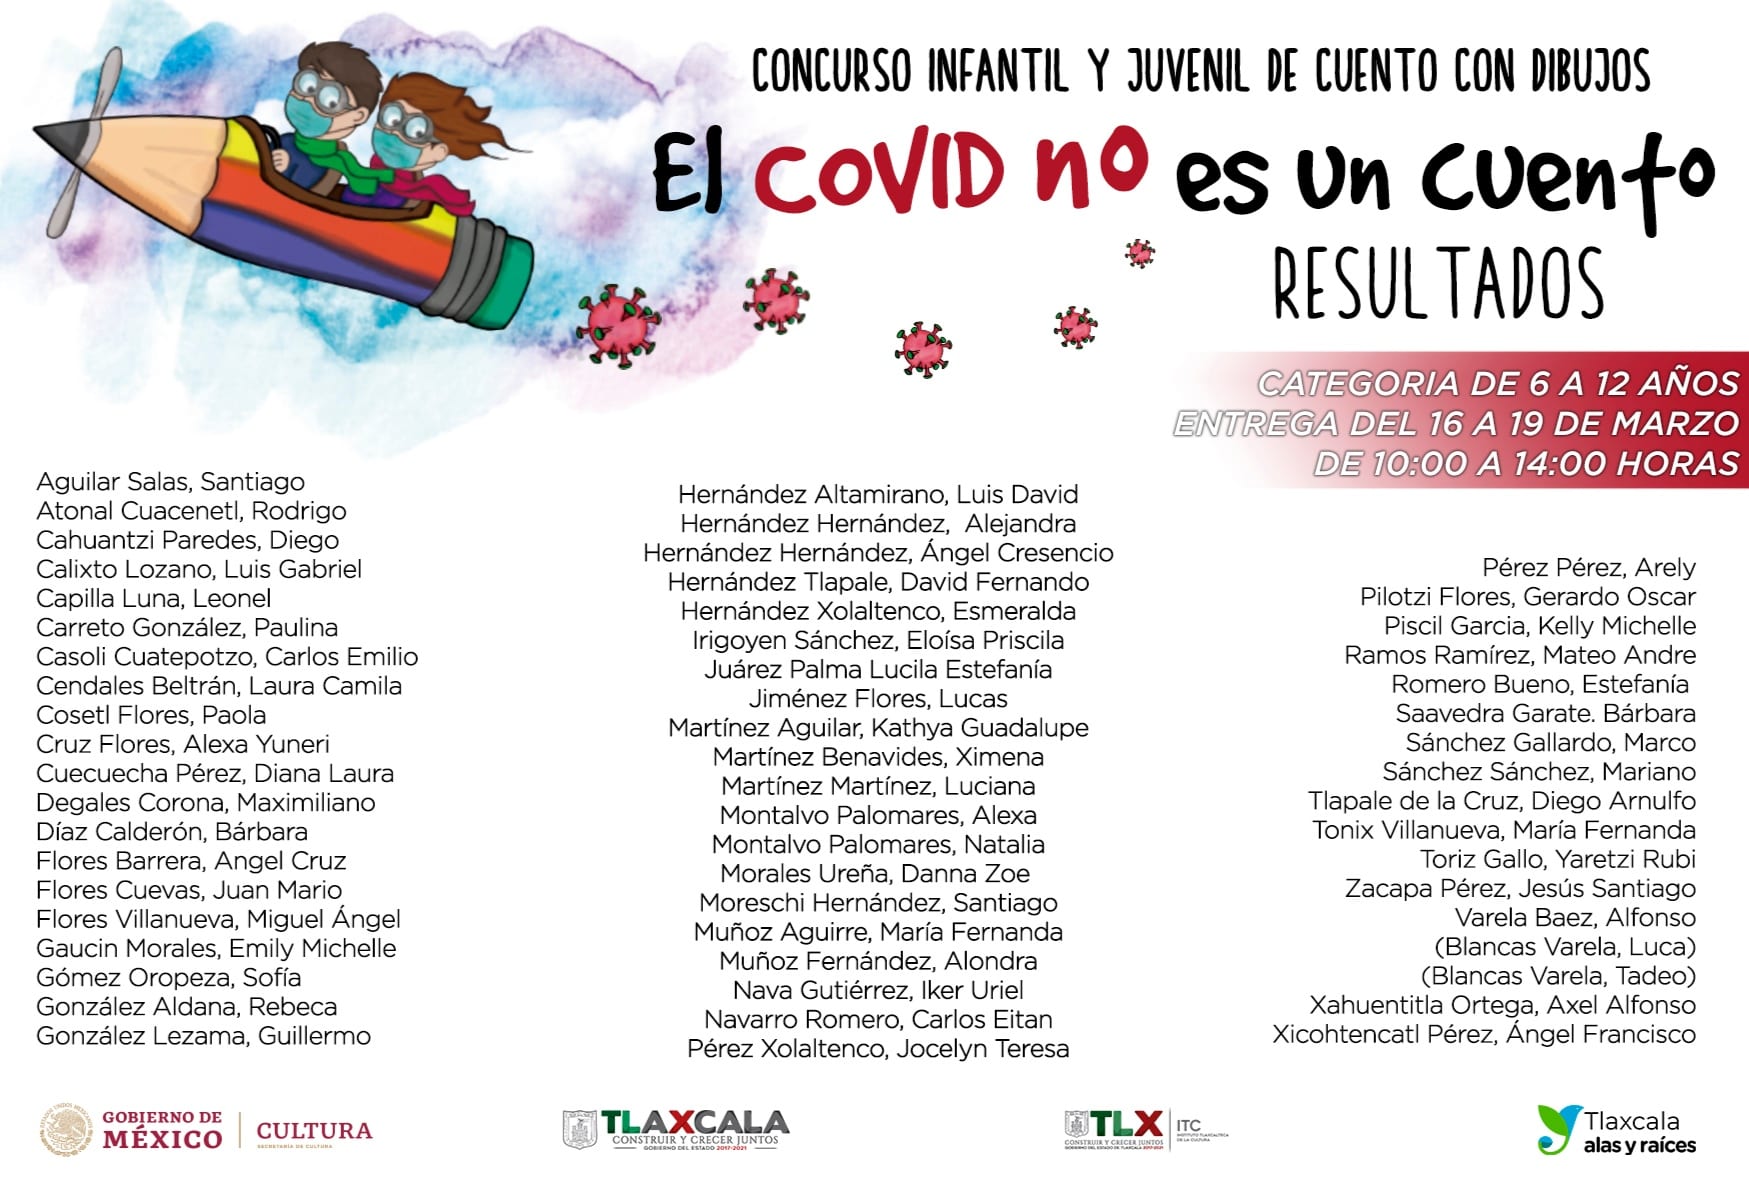 Presenta ITC resultados del concurso infantil y juvenil “El Covid no es un cuento”